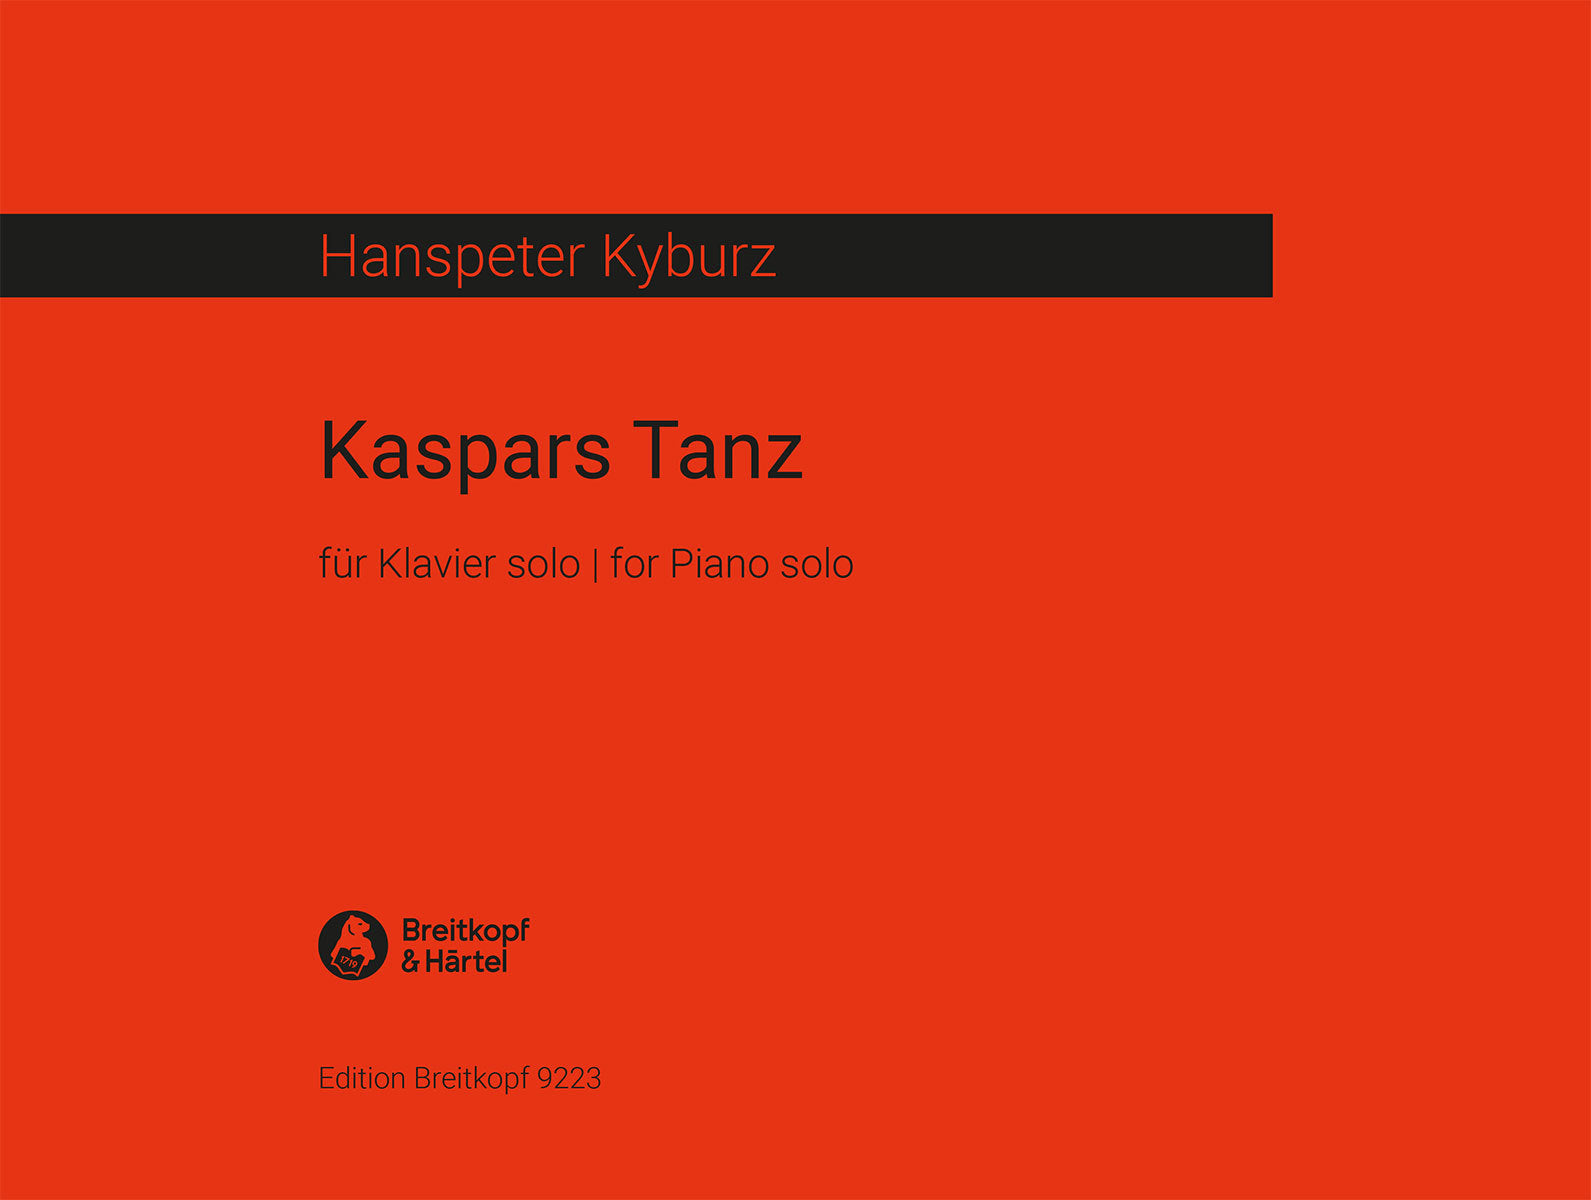 Kyburz: Kaspars Tanz